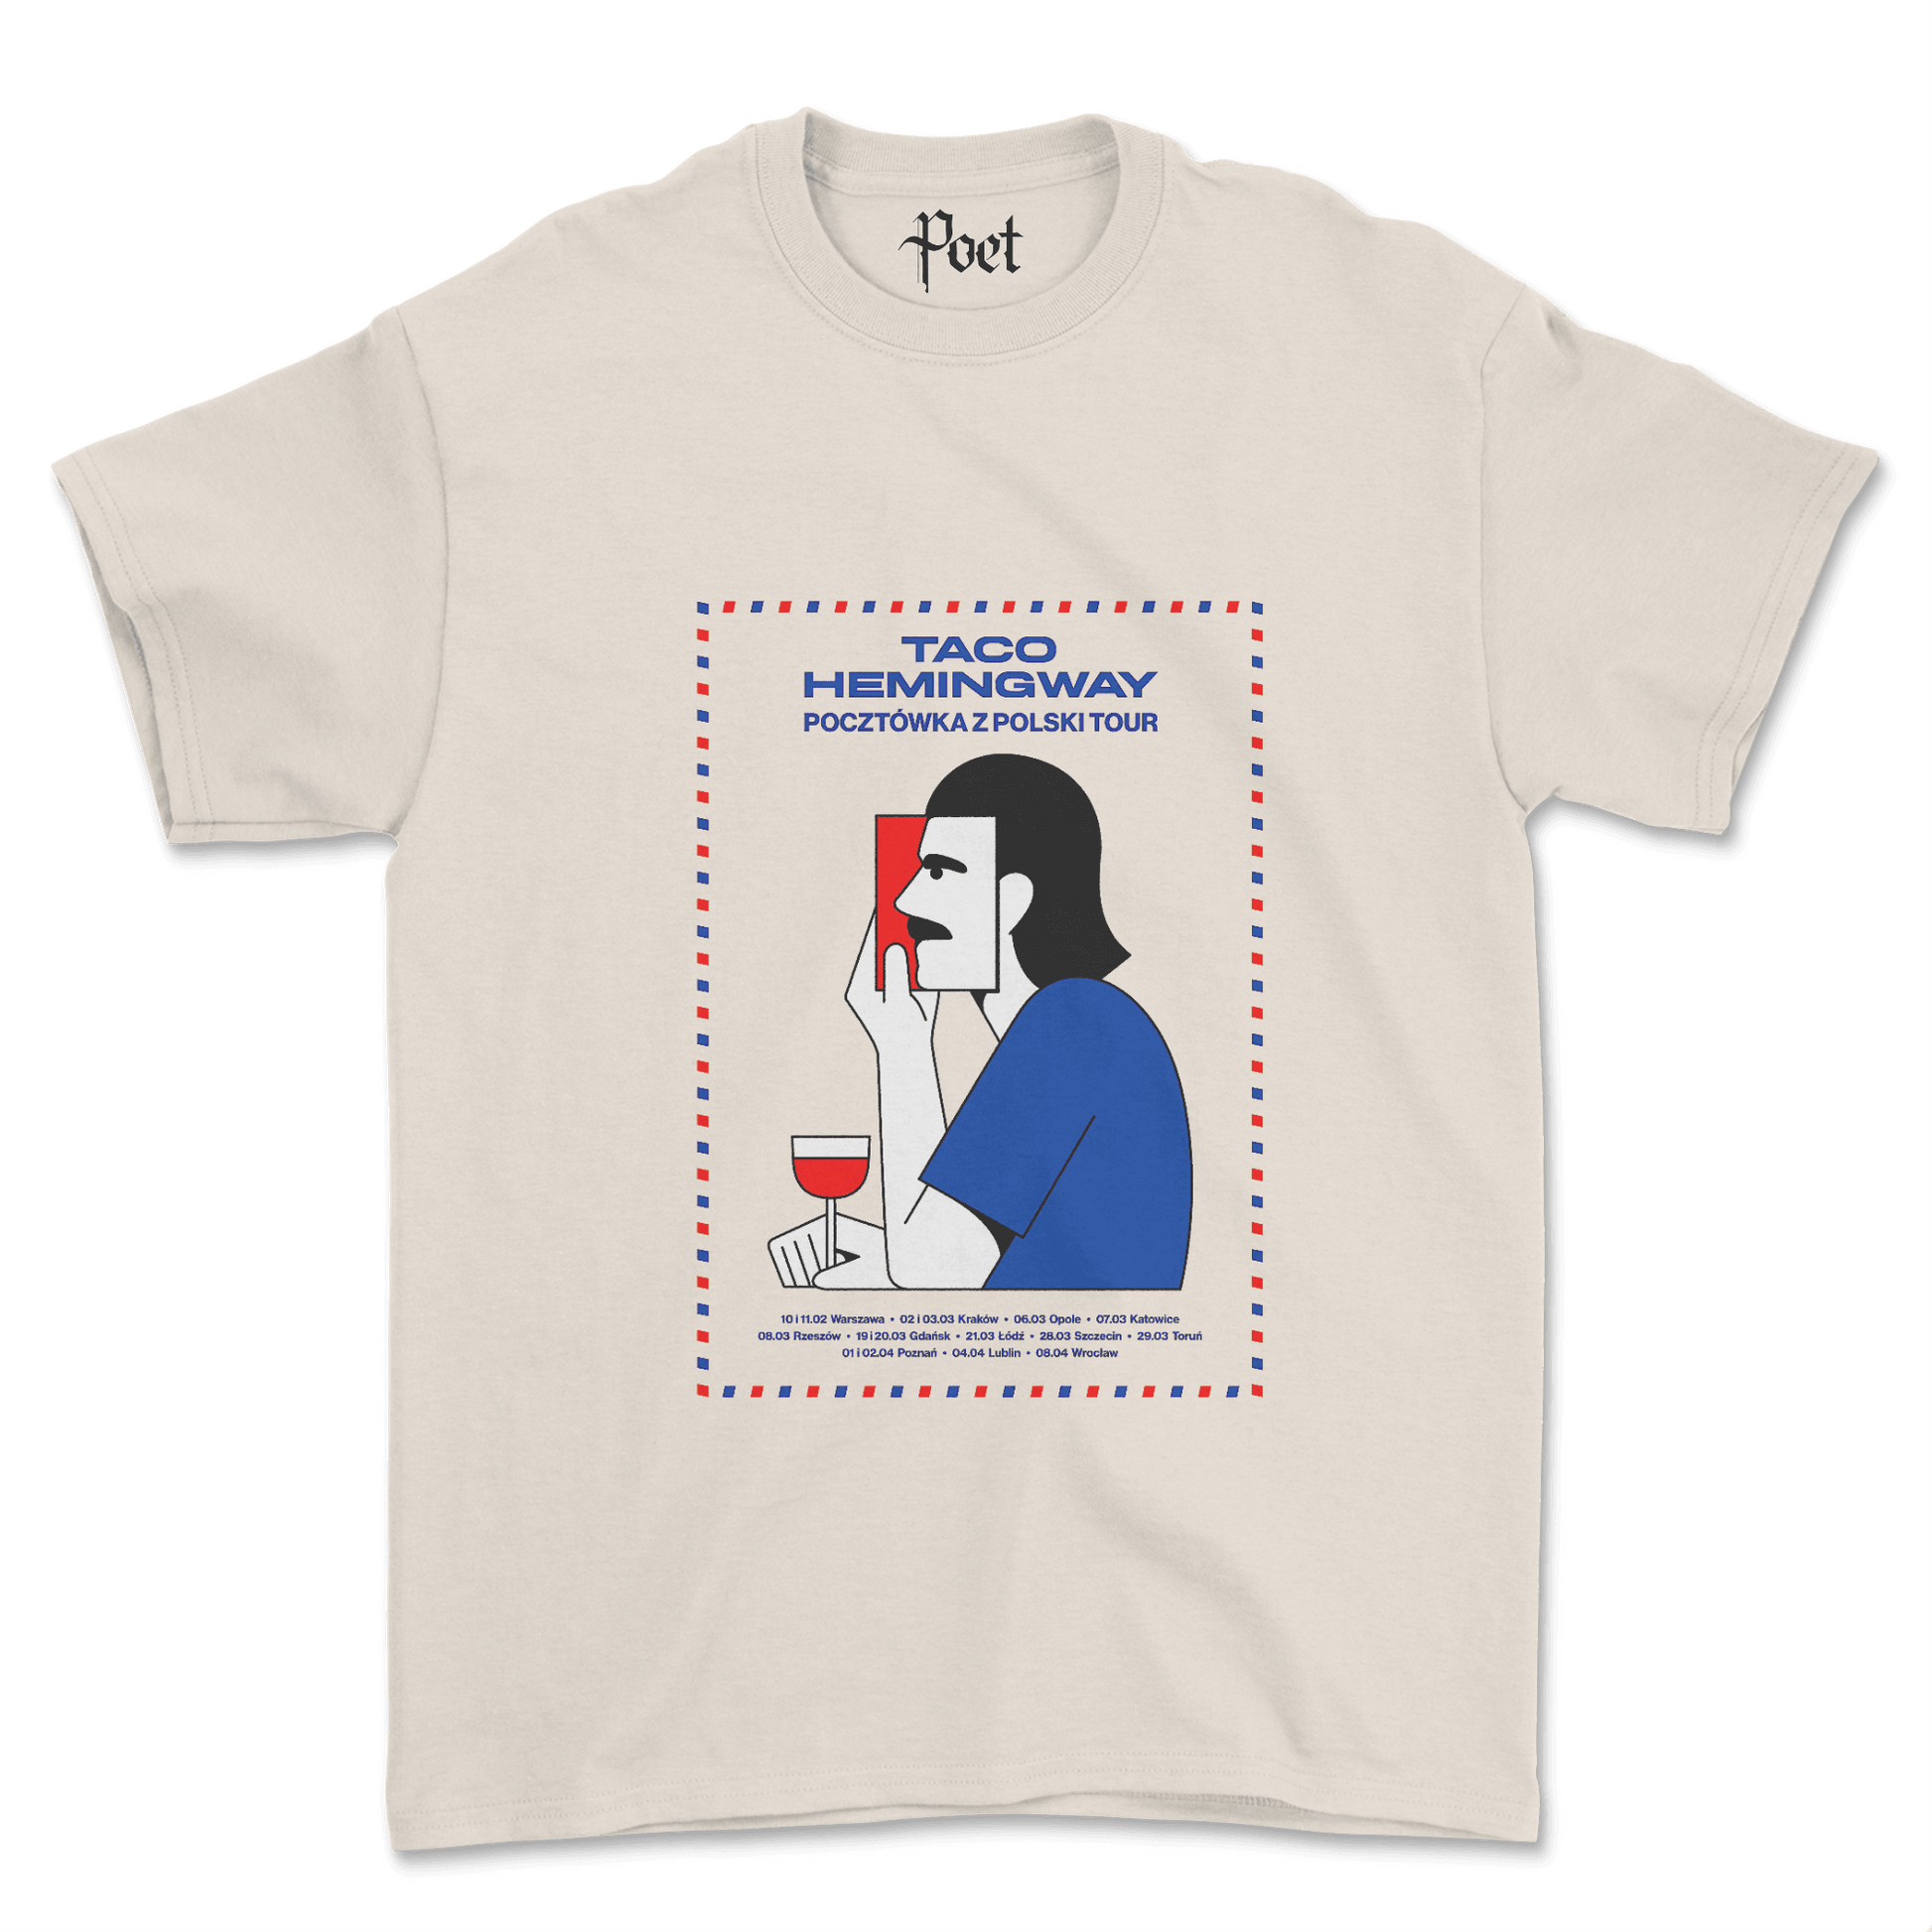 Taco Hemingway Pocztówka z Warszawy Tour T-Shirt - Poet Archives